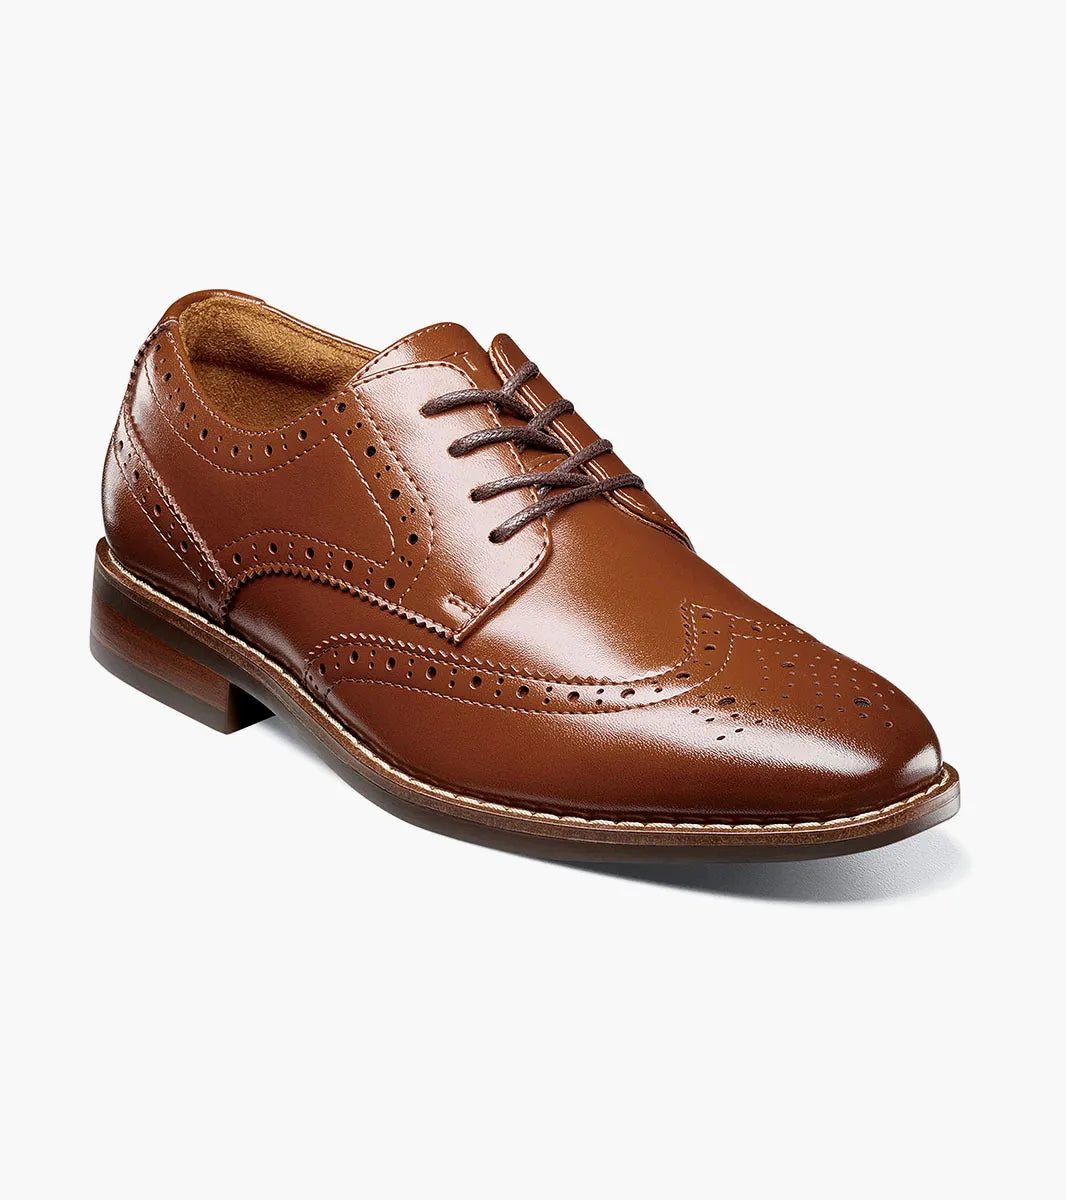 Boys Rucci Cognac Wingtip Oxford Shoe